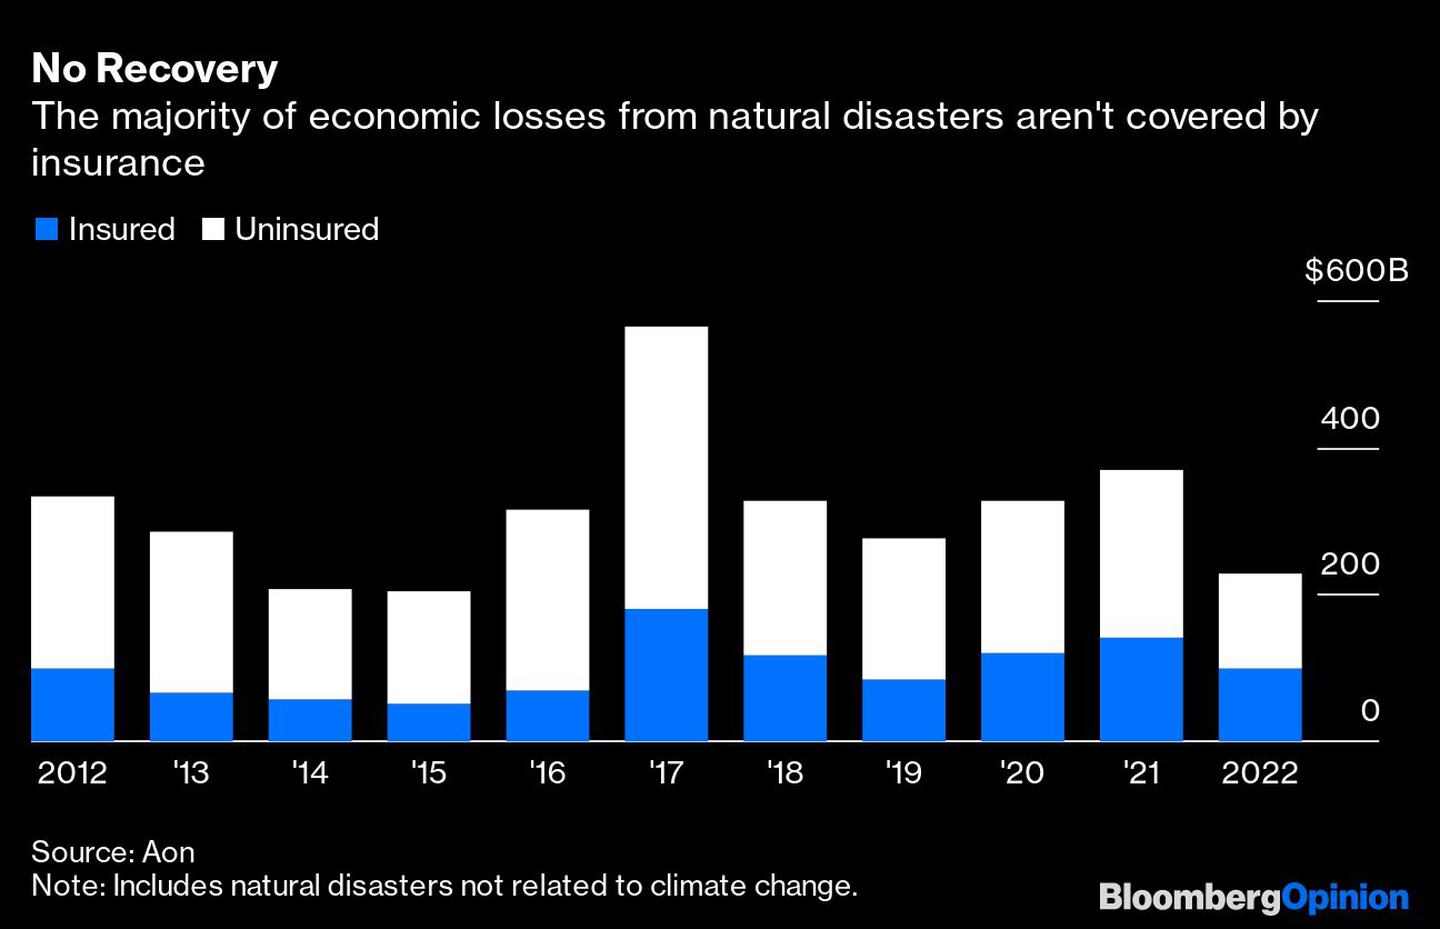  La mayoría de las pérdidas económicas de las catástrofes naturales no están cubiertas por los segurosdfd